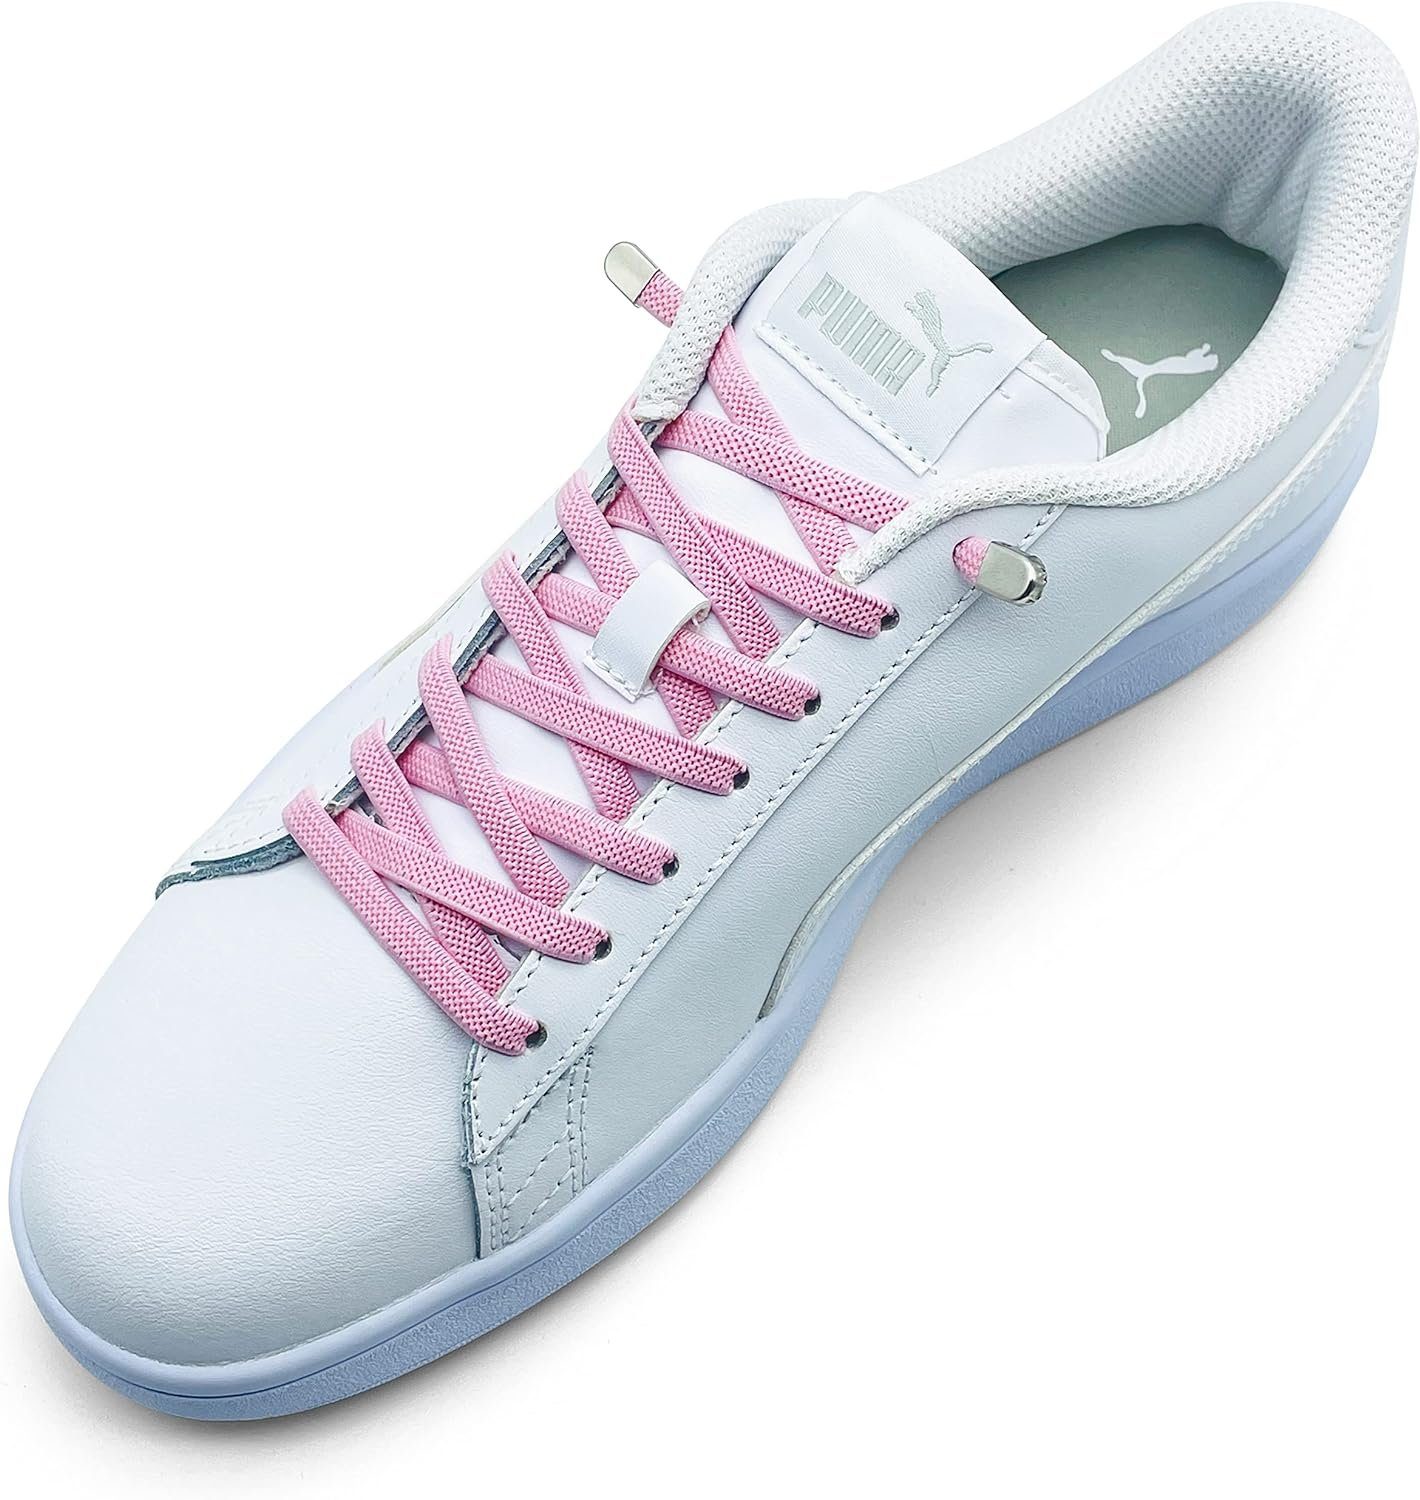 ELANOX Schnürsenkel 4 Stück für 2 Paar Schuhe elastische Schnürsenkel mit Clips, inkl. Enden (Clips) - 8 St. in silber light pink